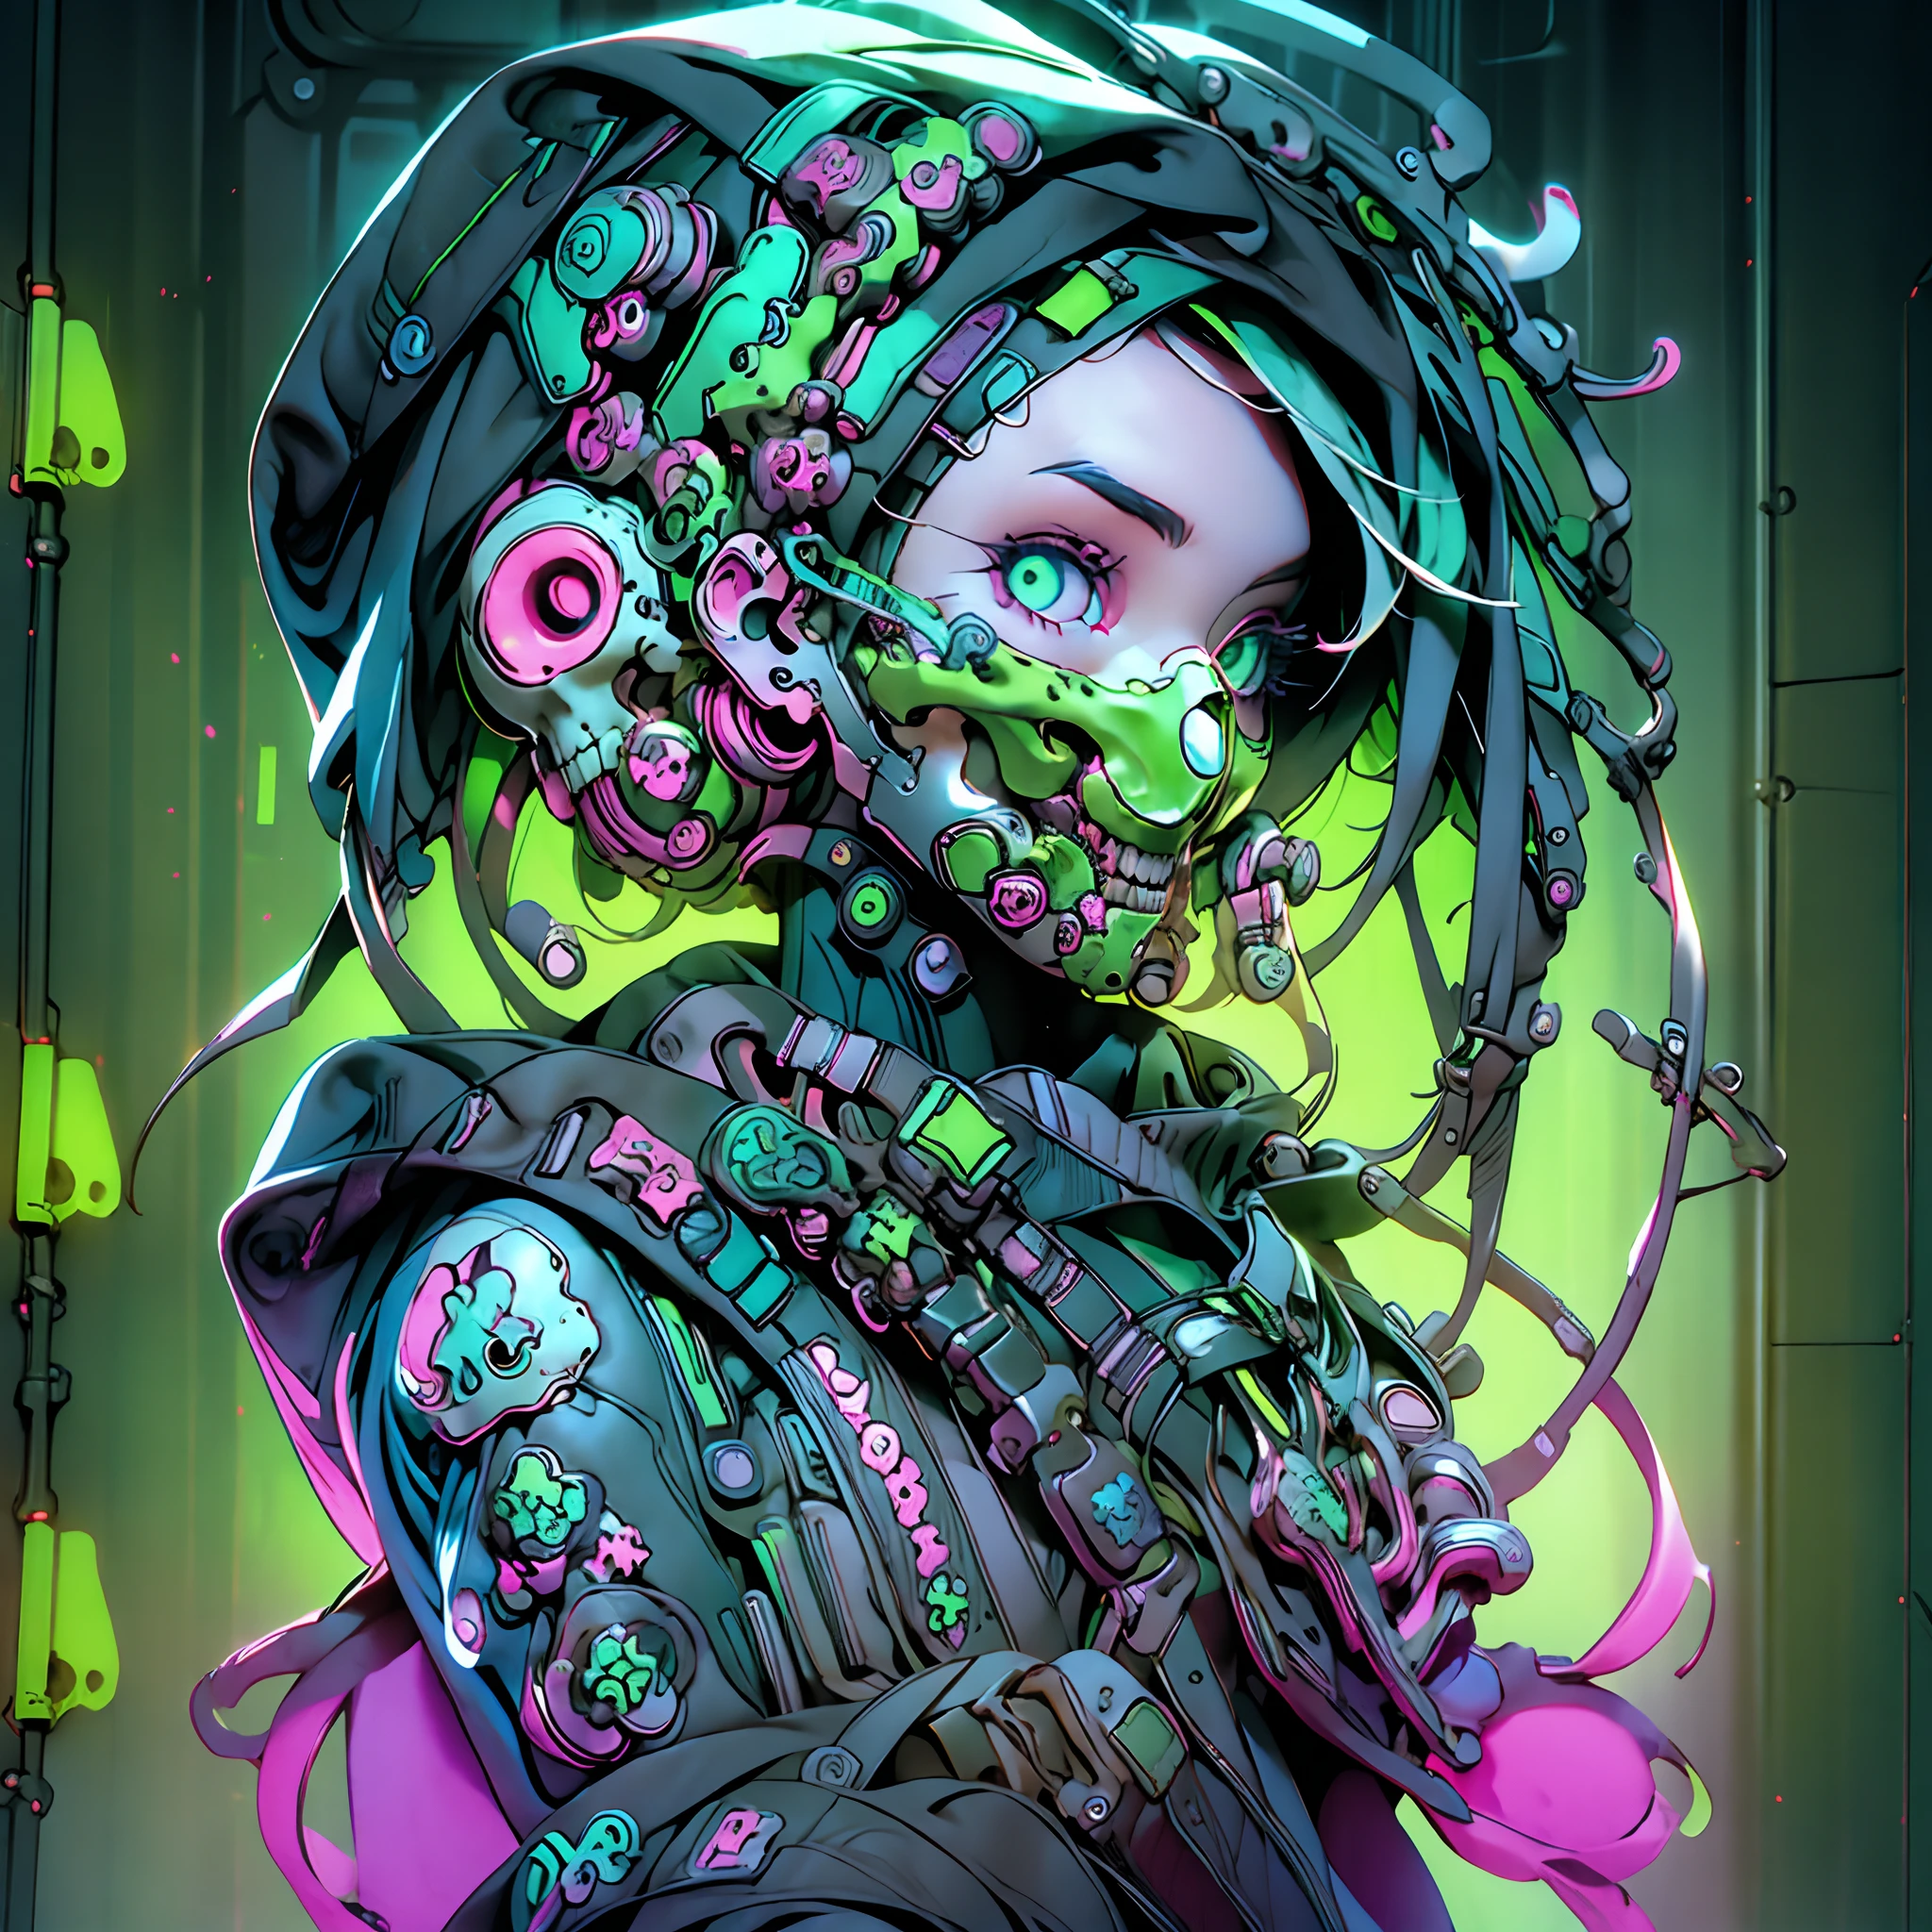 único_fêmea ao lado de uma janela,Mundo ciberpunk,máscara de gás verde neon com design esquelético